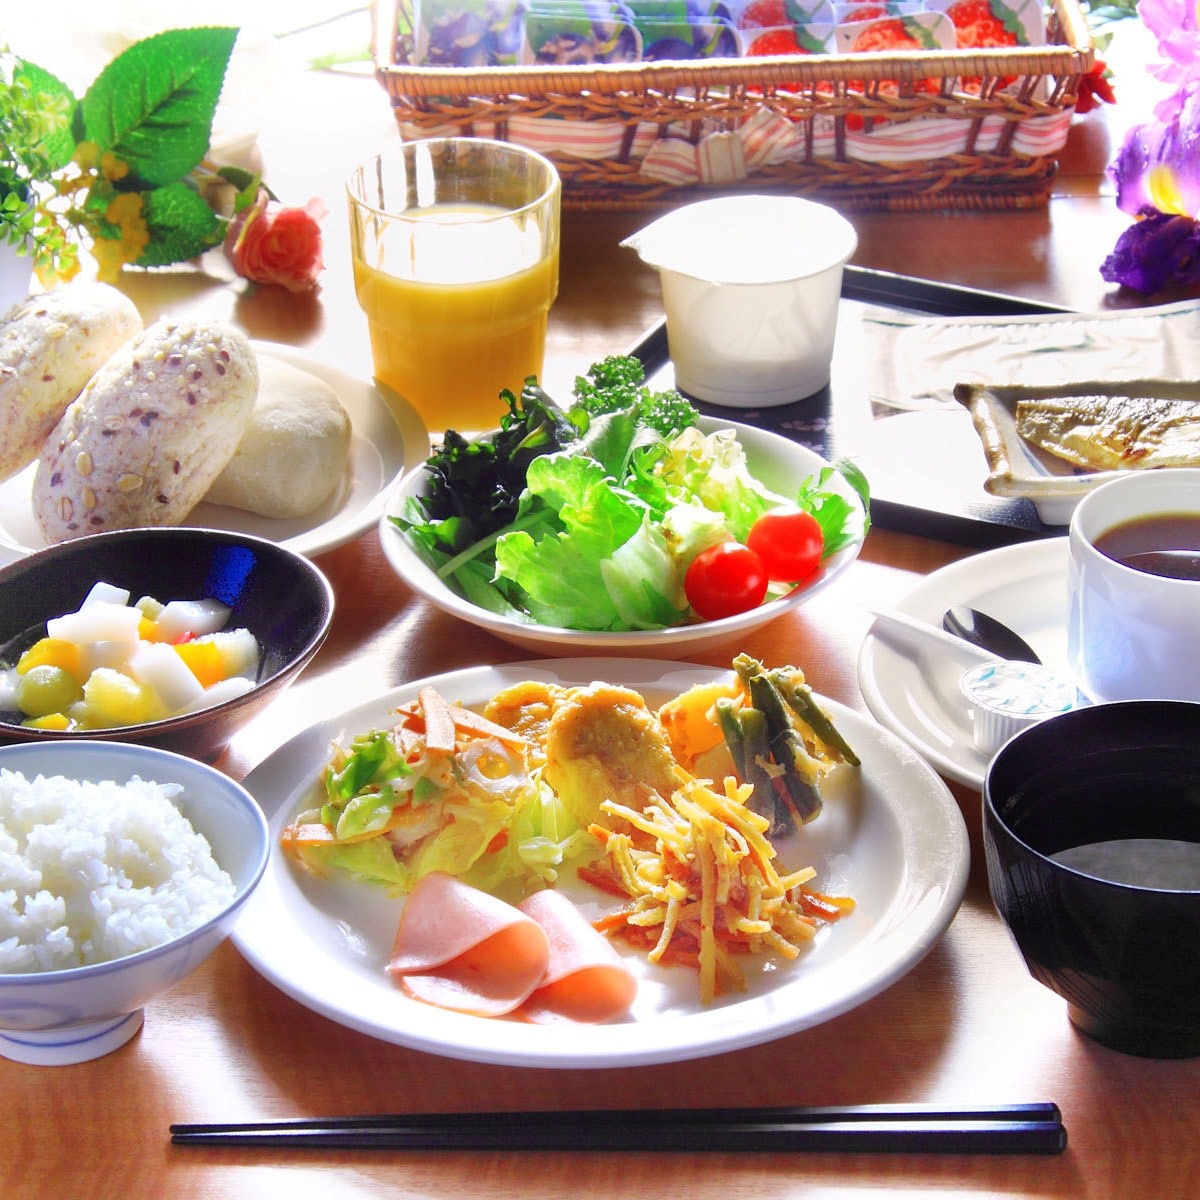 ★ 아침 식사 바이킹 ★ 쌀은 미야기 현산 히토 메보레를 사용!